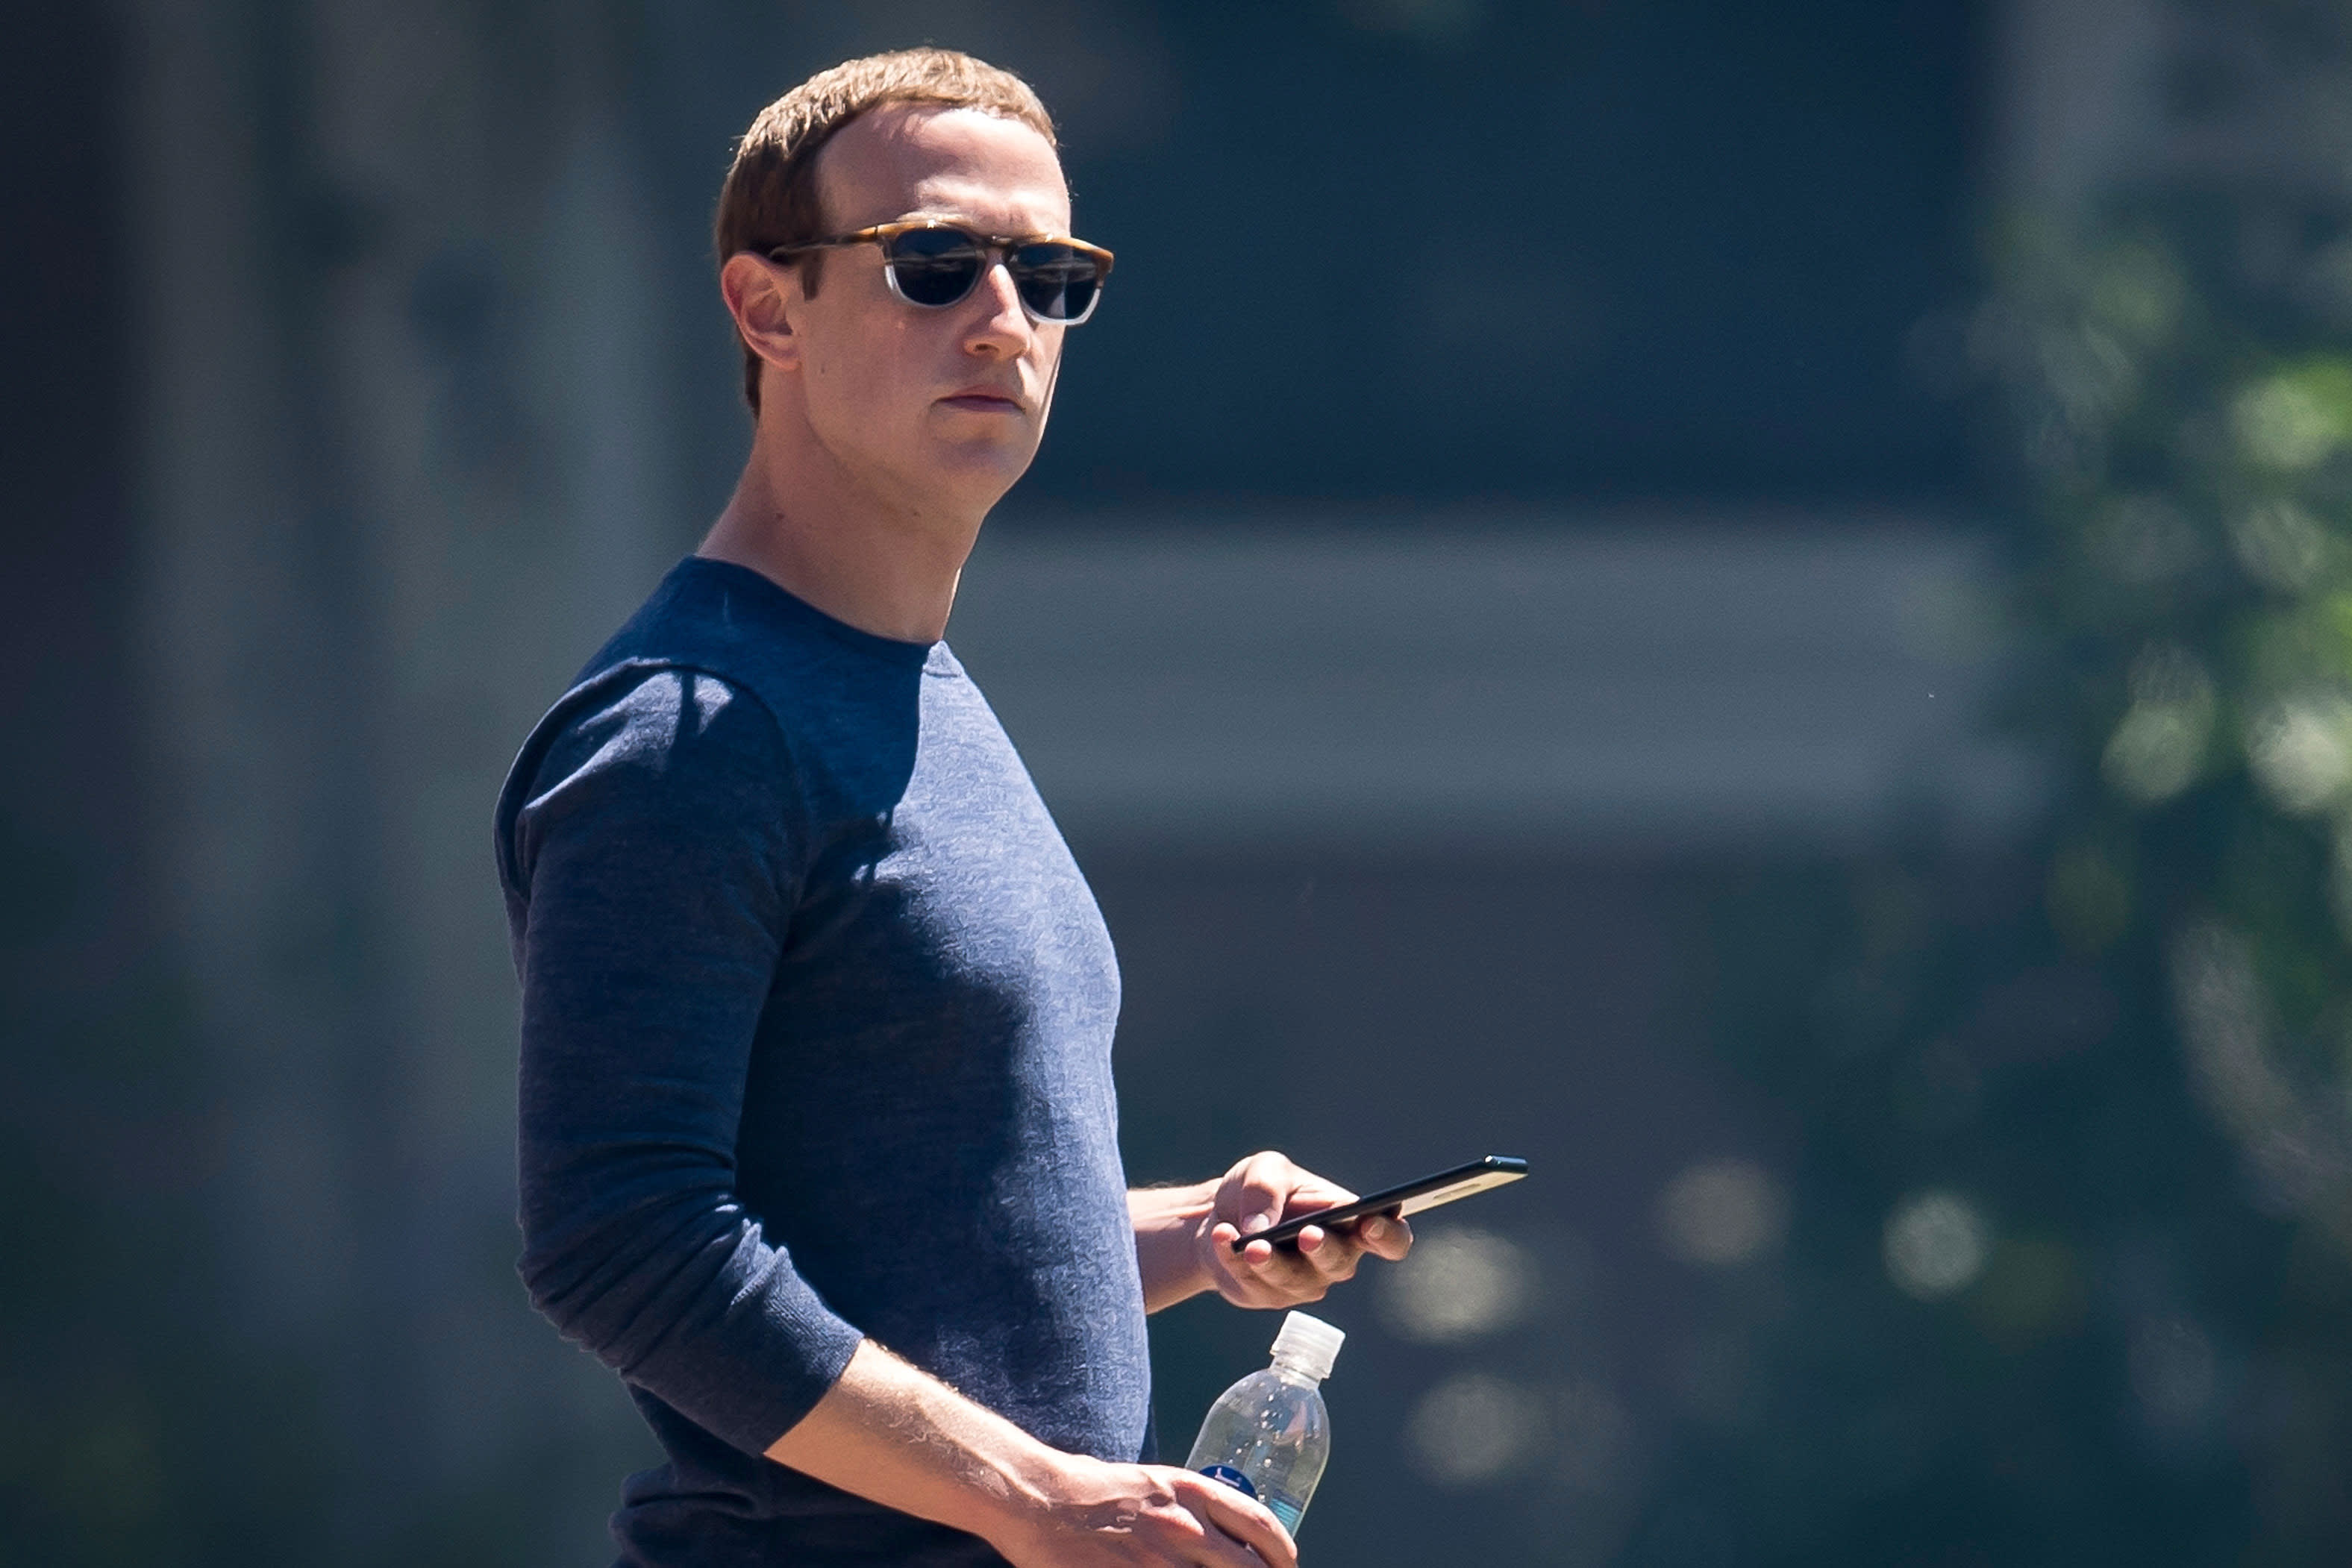 Facebook market cap under $600 billion threshold for antitrust bills